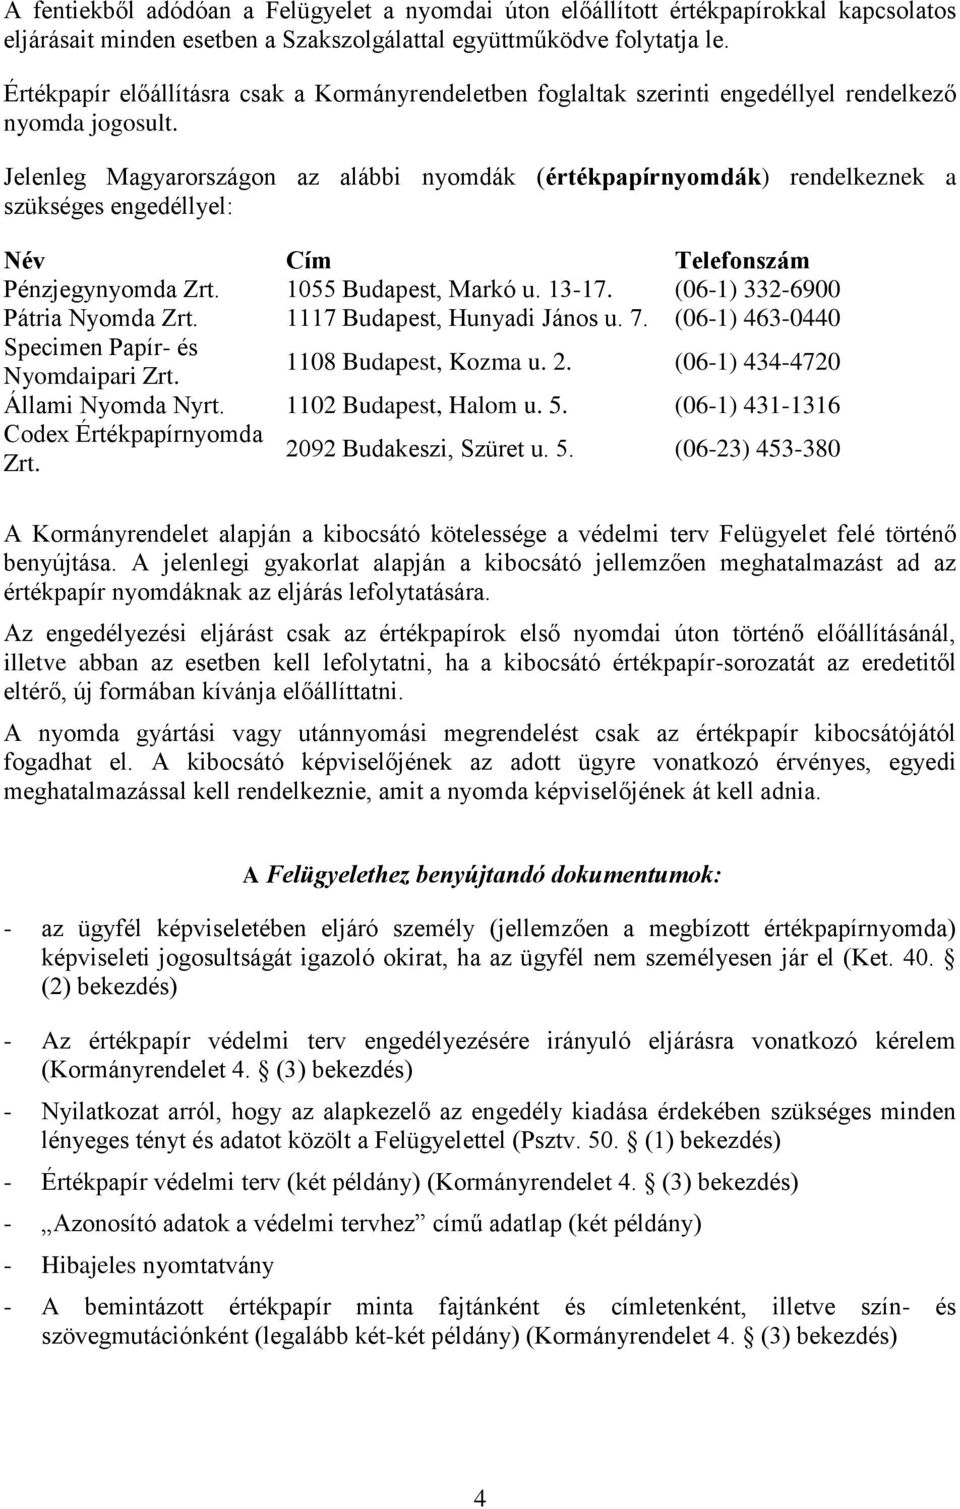 Jelenleg Magyarországon az alábbi nyomdák (értékpapírnyomdák) rendelkeznek a szükséges engedéllyel: Név Cím Telefonszám Pénzjegynyomda Zrt. 1055 Budapest, Markó u. 13-17.